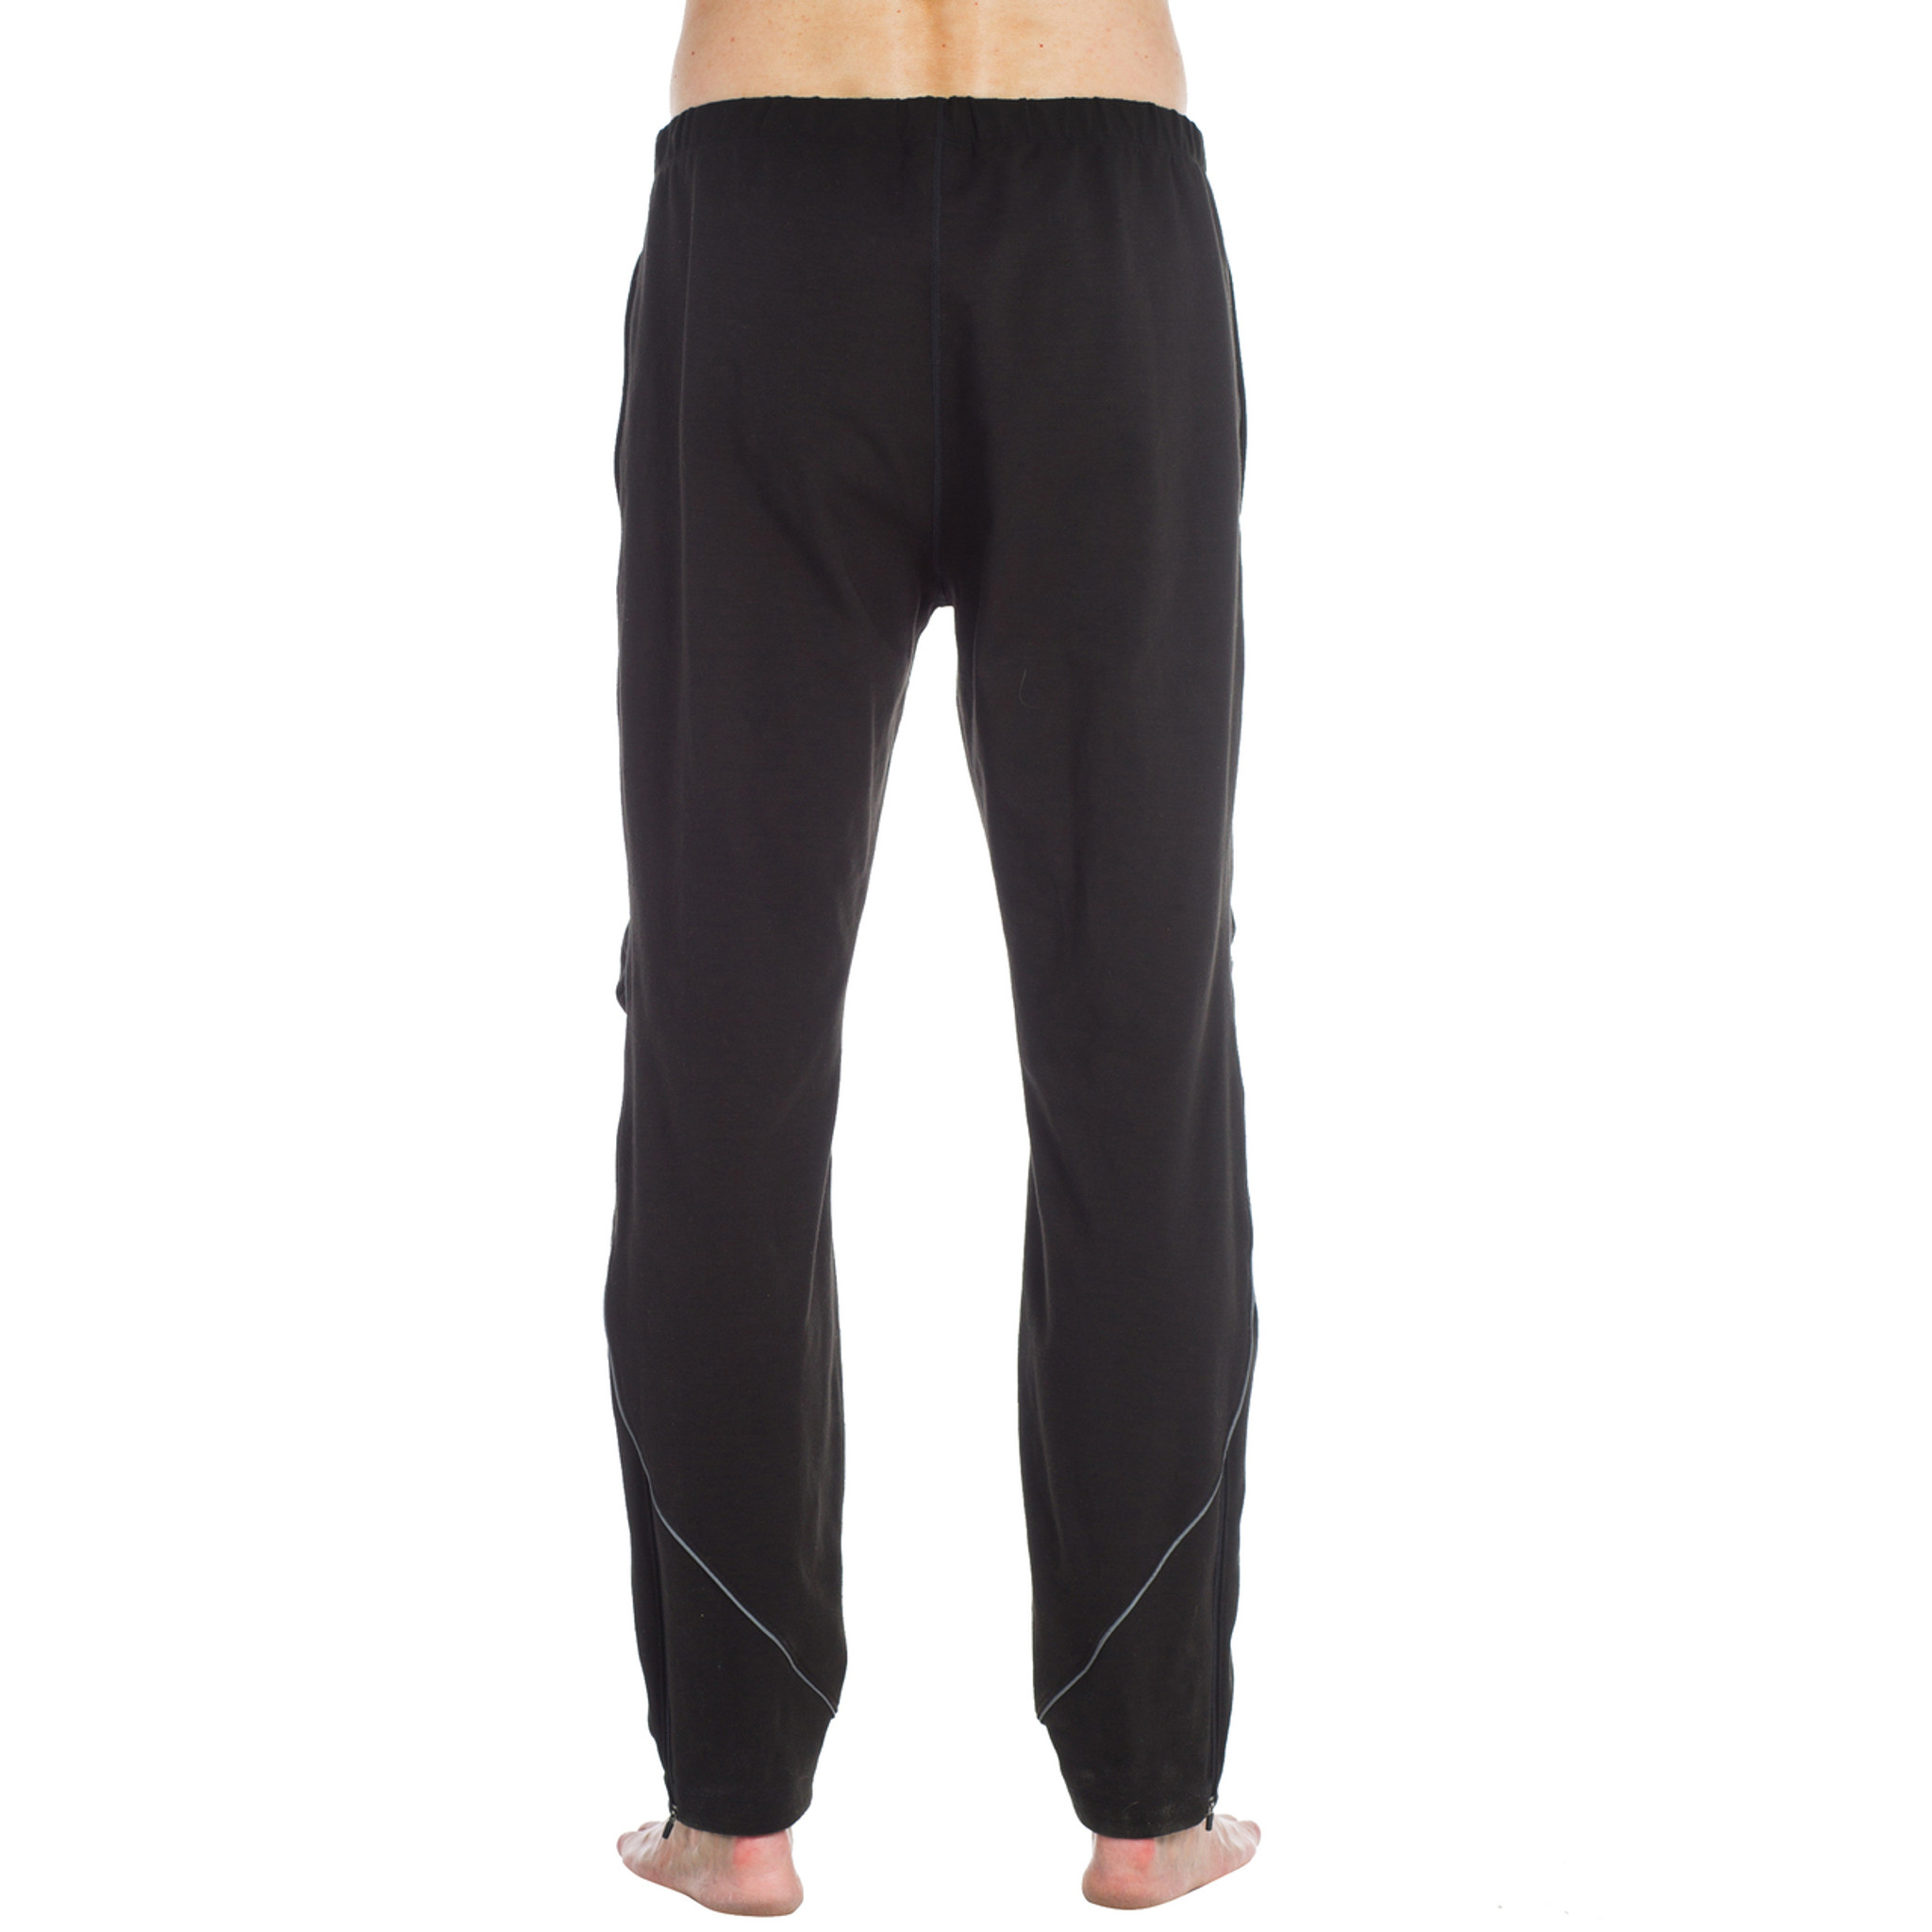 ₪91-Gym Sweatpants Jogger Pants Men Casual Black Trousers Male Fitness  Sport Workout Cotton Track Pants Autumn Winter Sports-Description